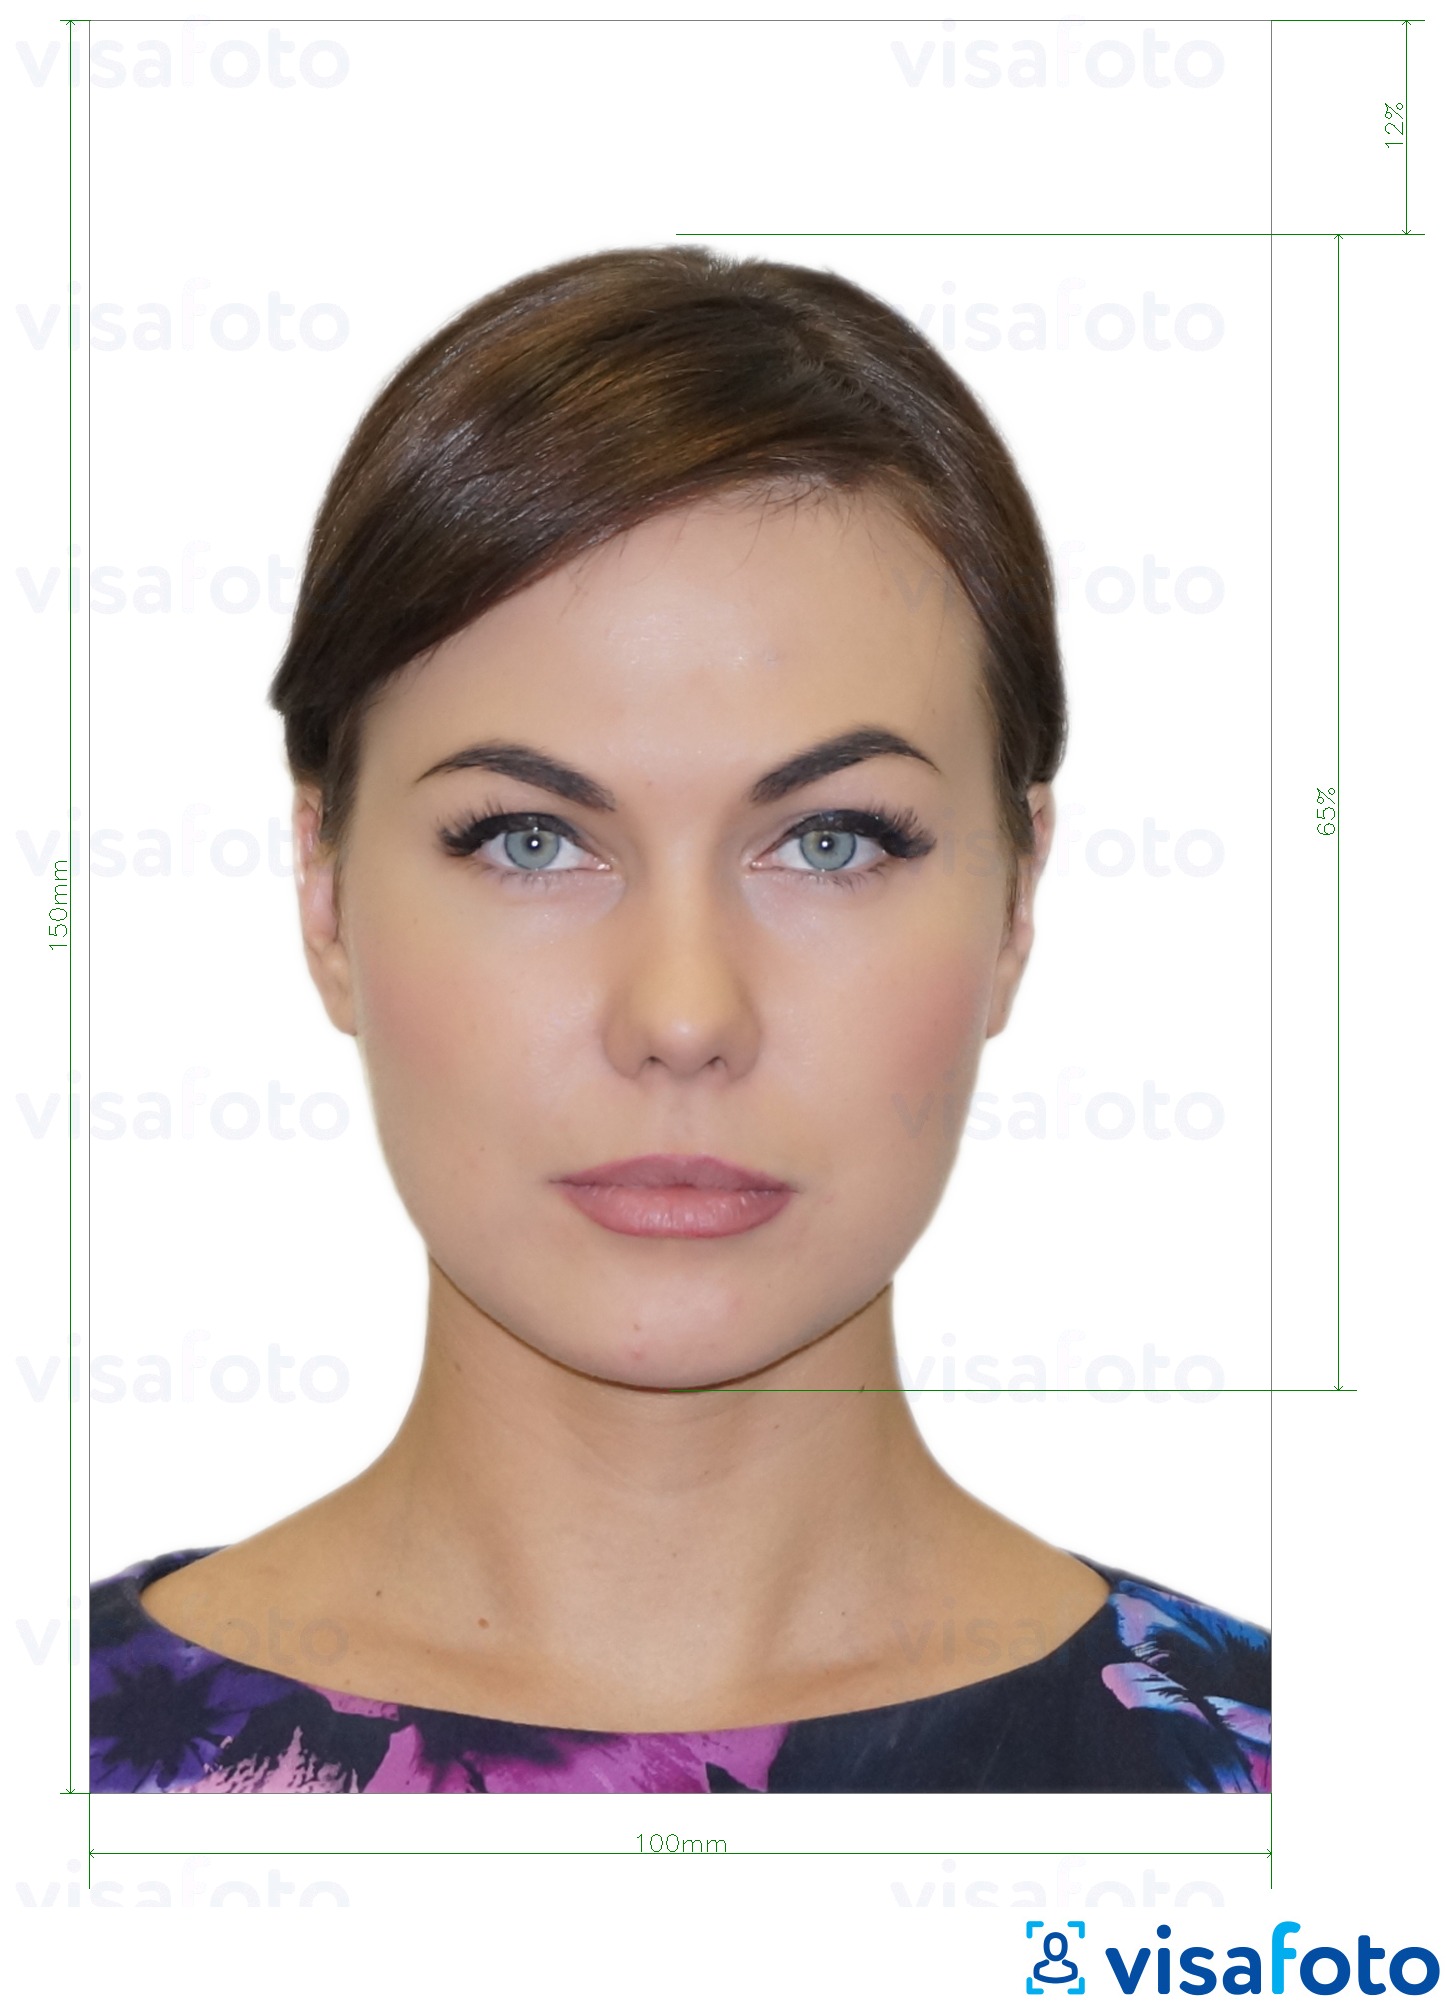 Contoh dari foto untuk Kartu ID Moldova (Buletin de identitate) 10x15 cm dengan ukuran spesifikasi yang tepat